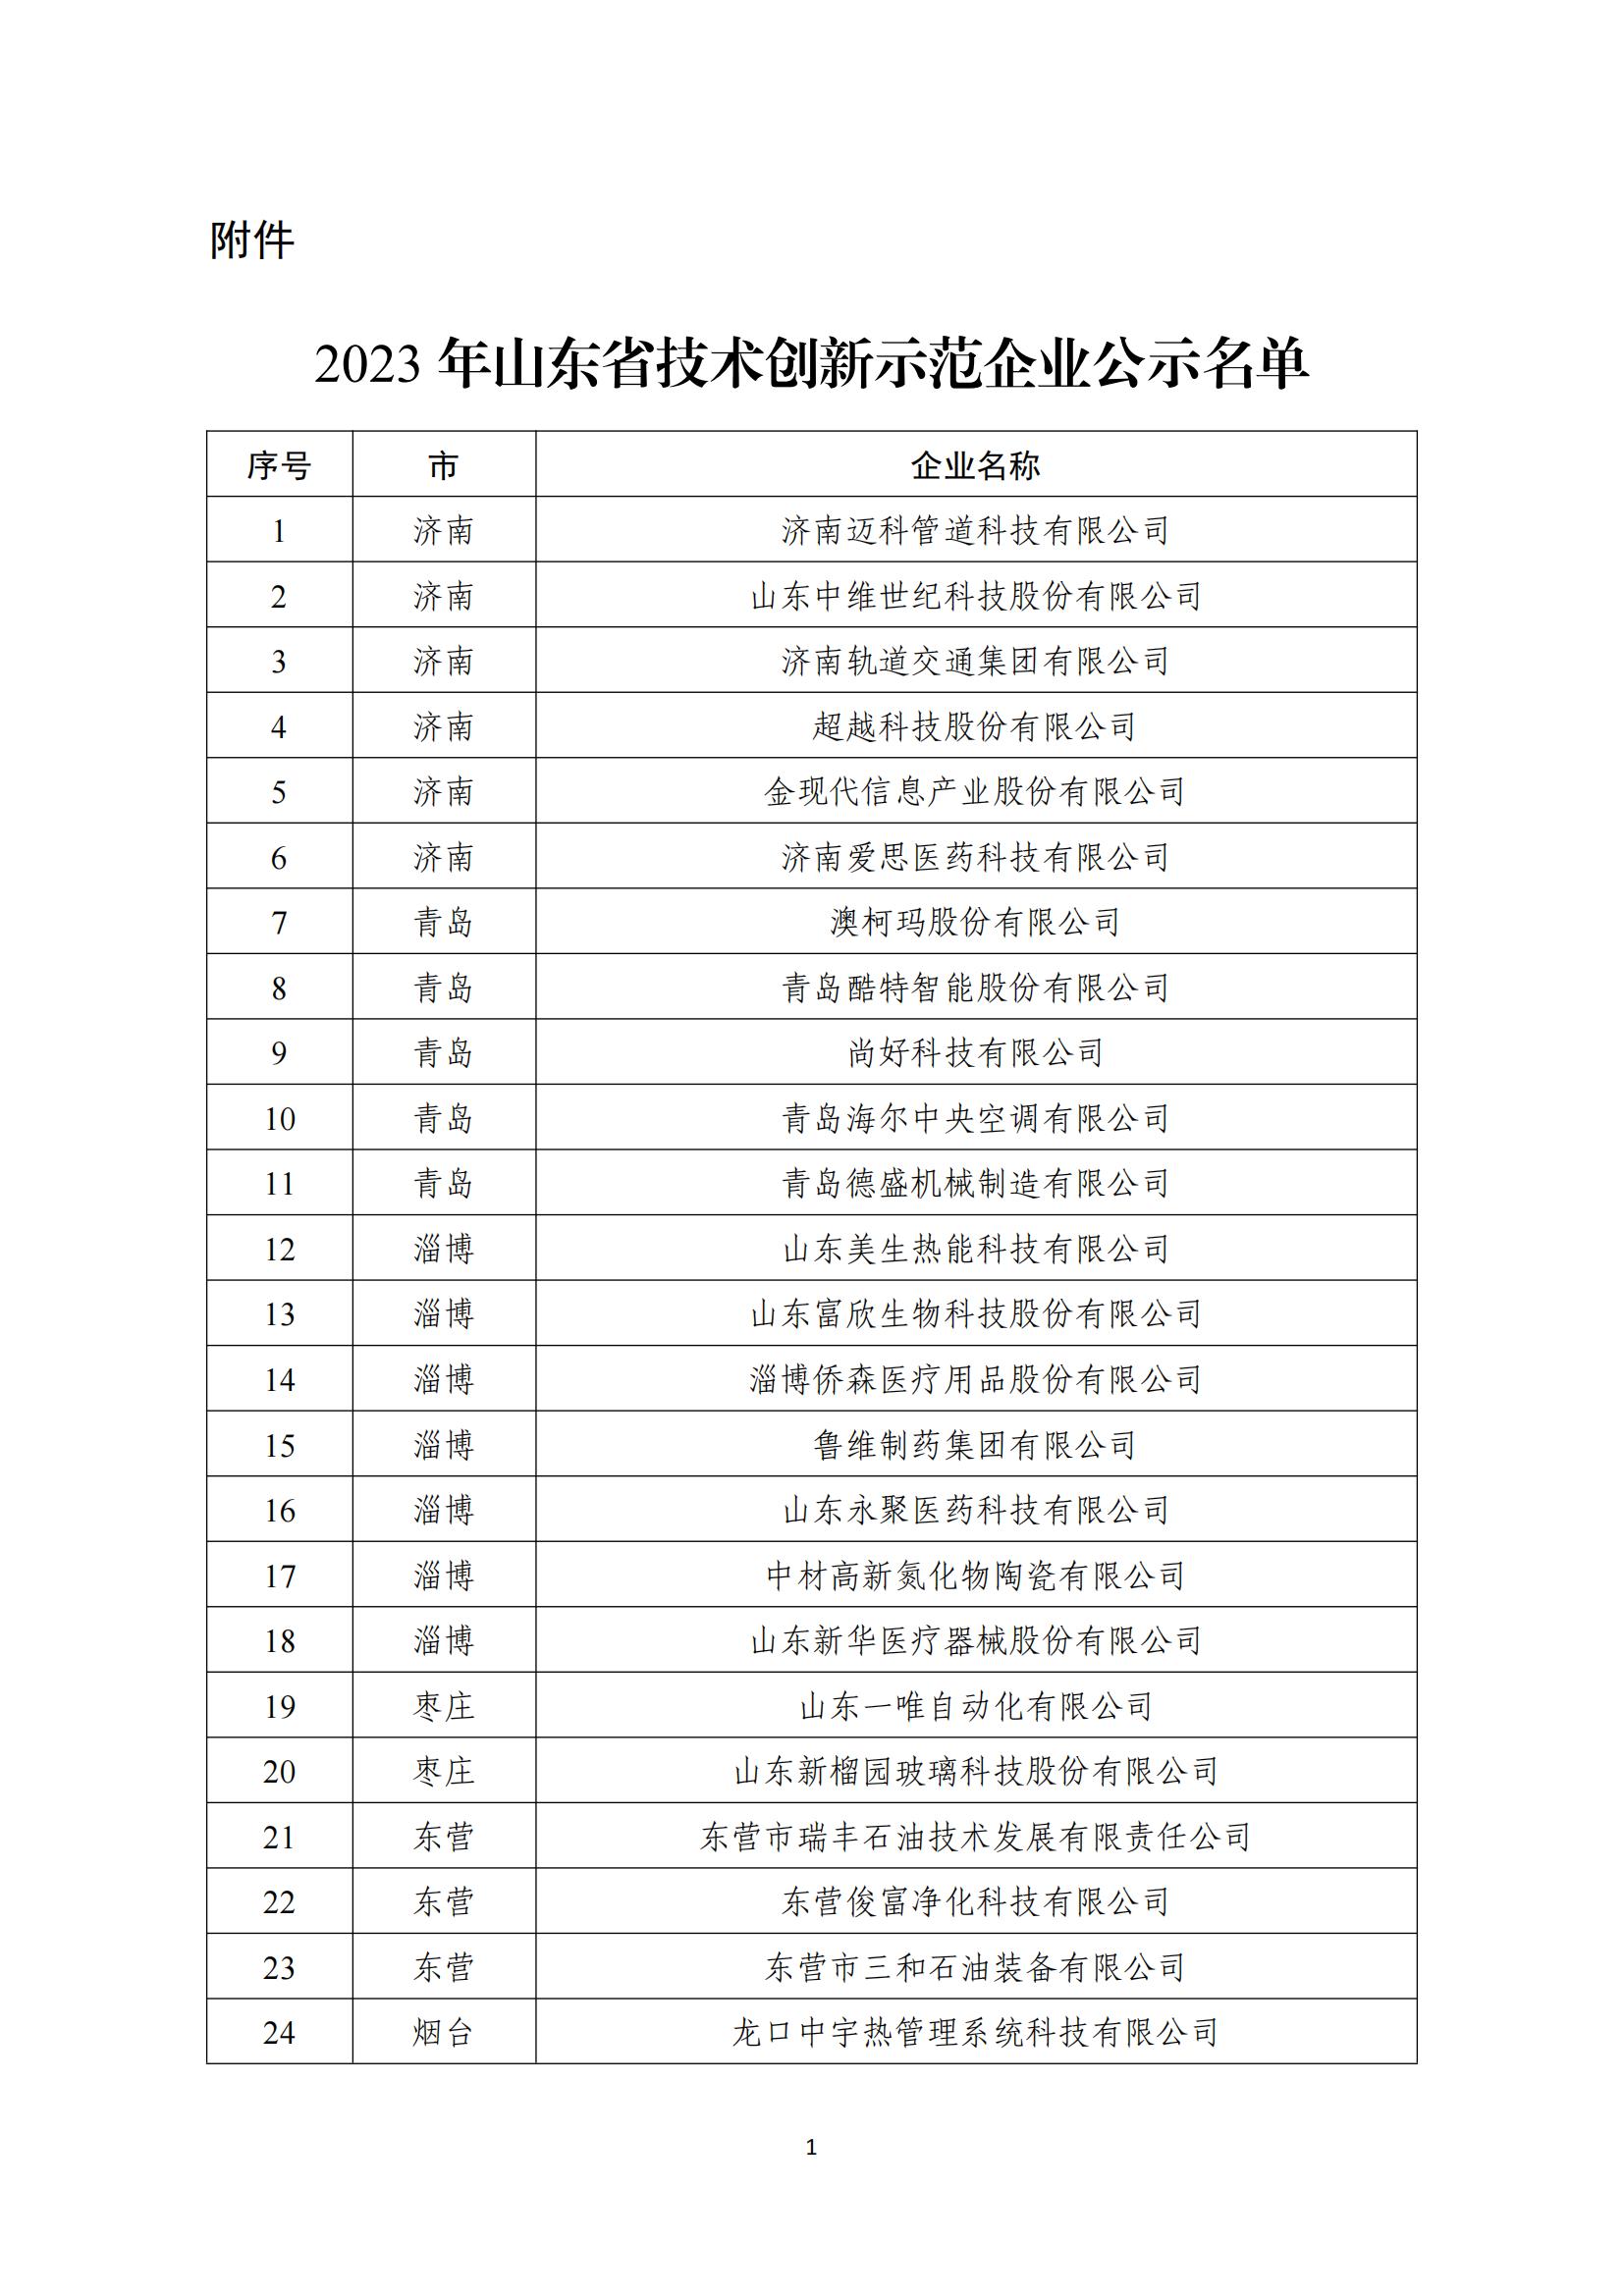 2023年山东省技术创新示范企业公示名单_00.jpg